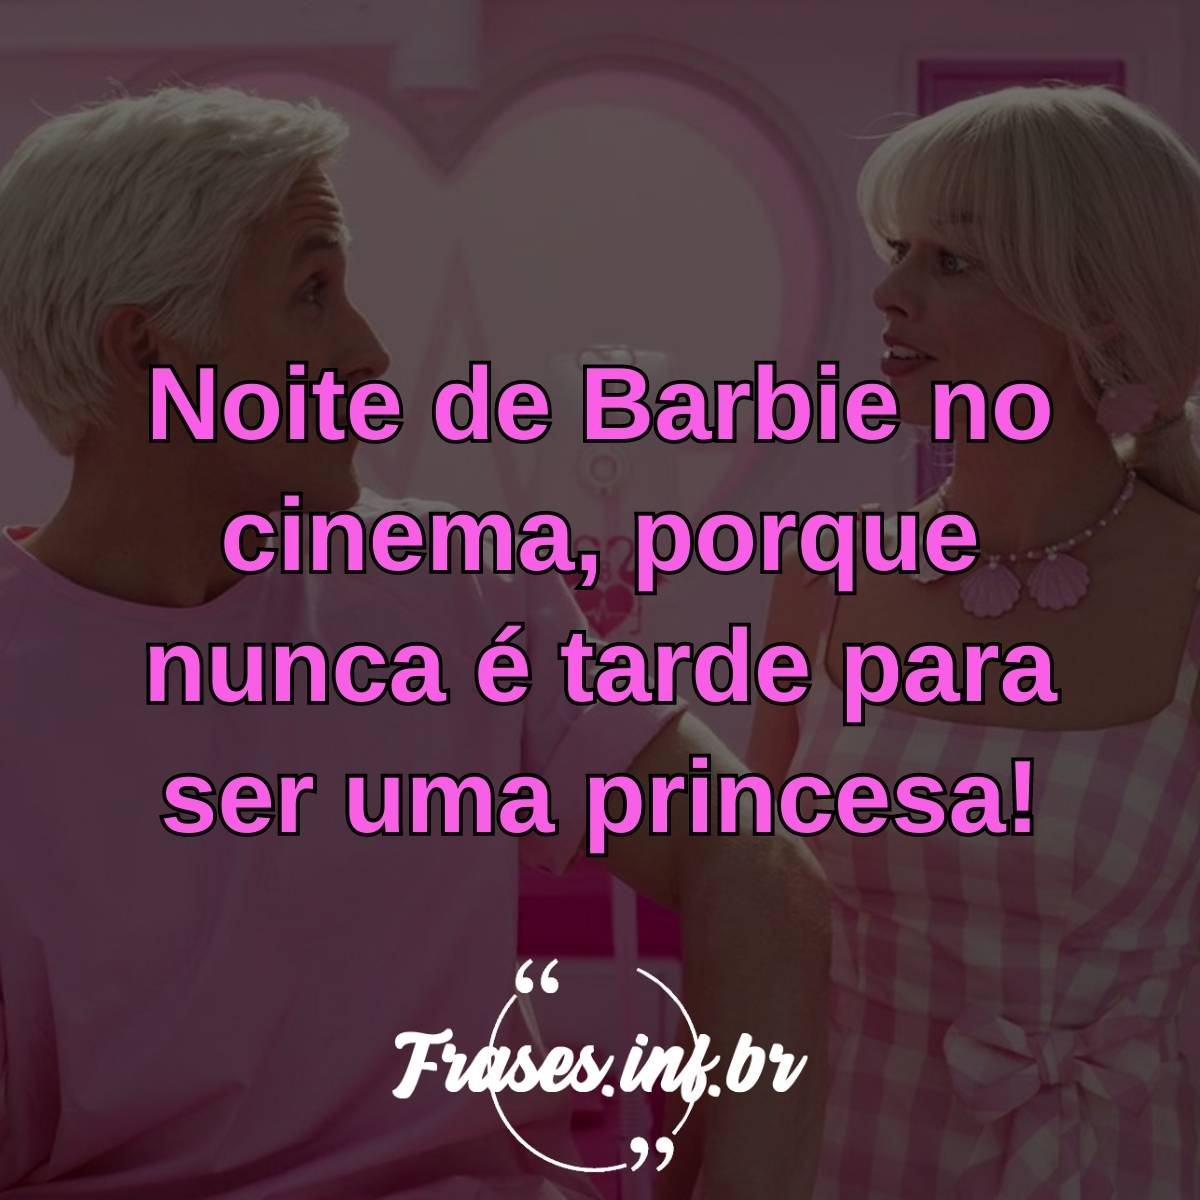 50 ideias de legendas para fotos assistindo o filme da Barbie no cinema